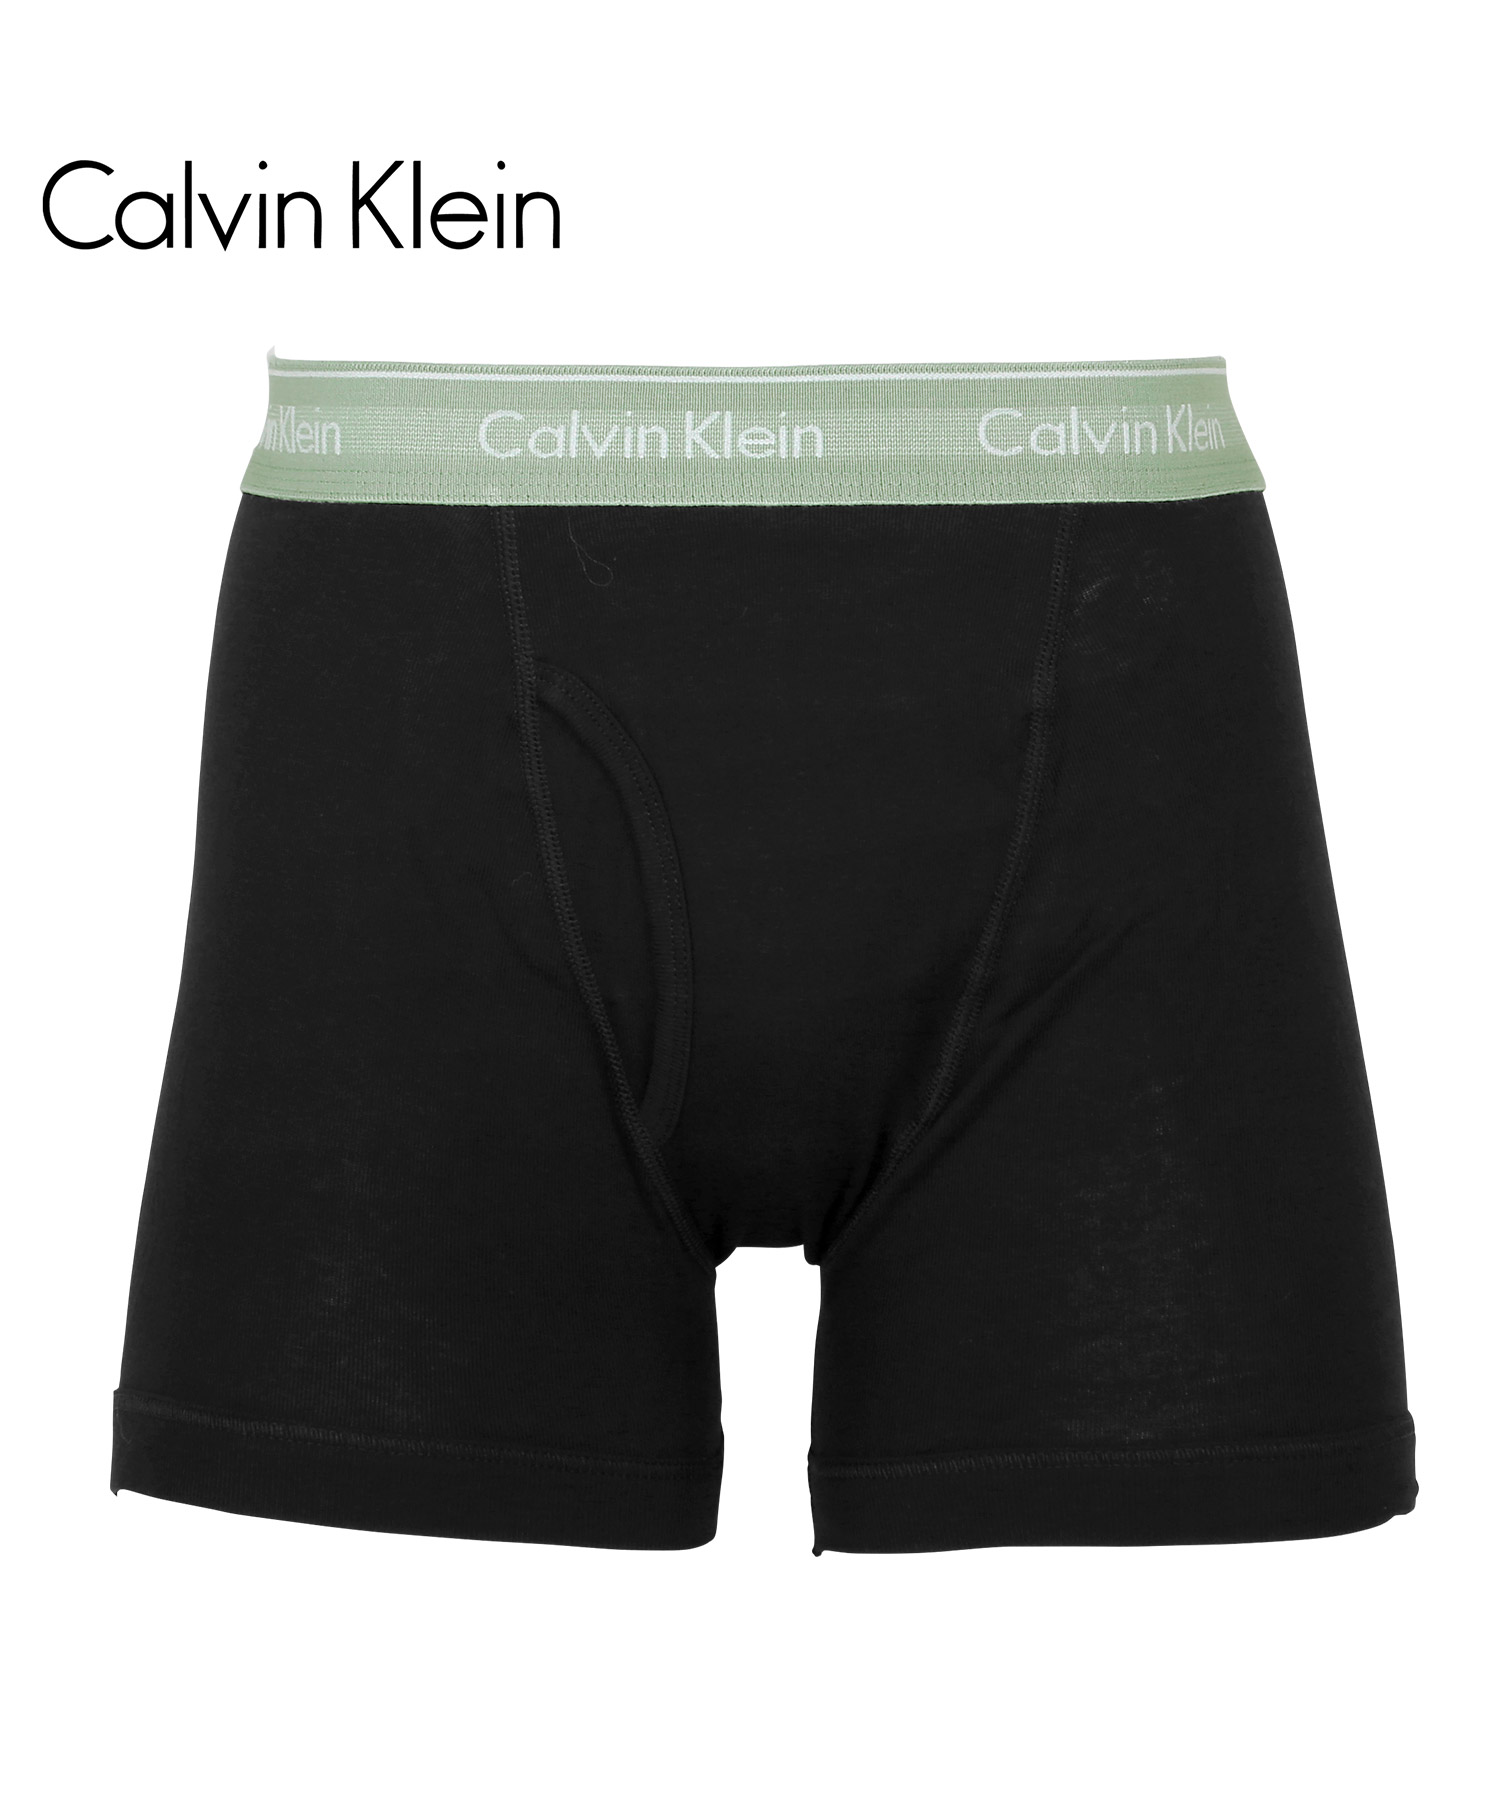 カルバンクライン ボクサーパンツ Calvin Klein ロング メンズ 下着 アンダーウェア 紳...